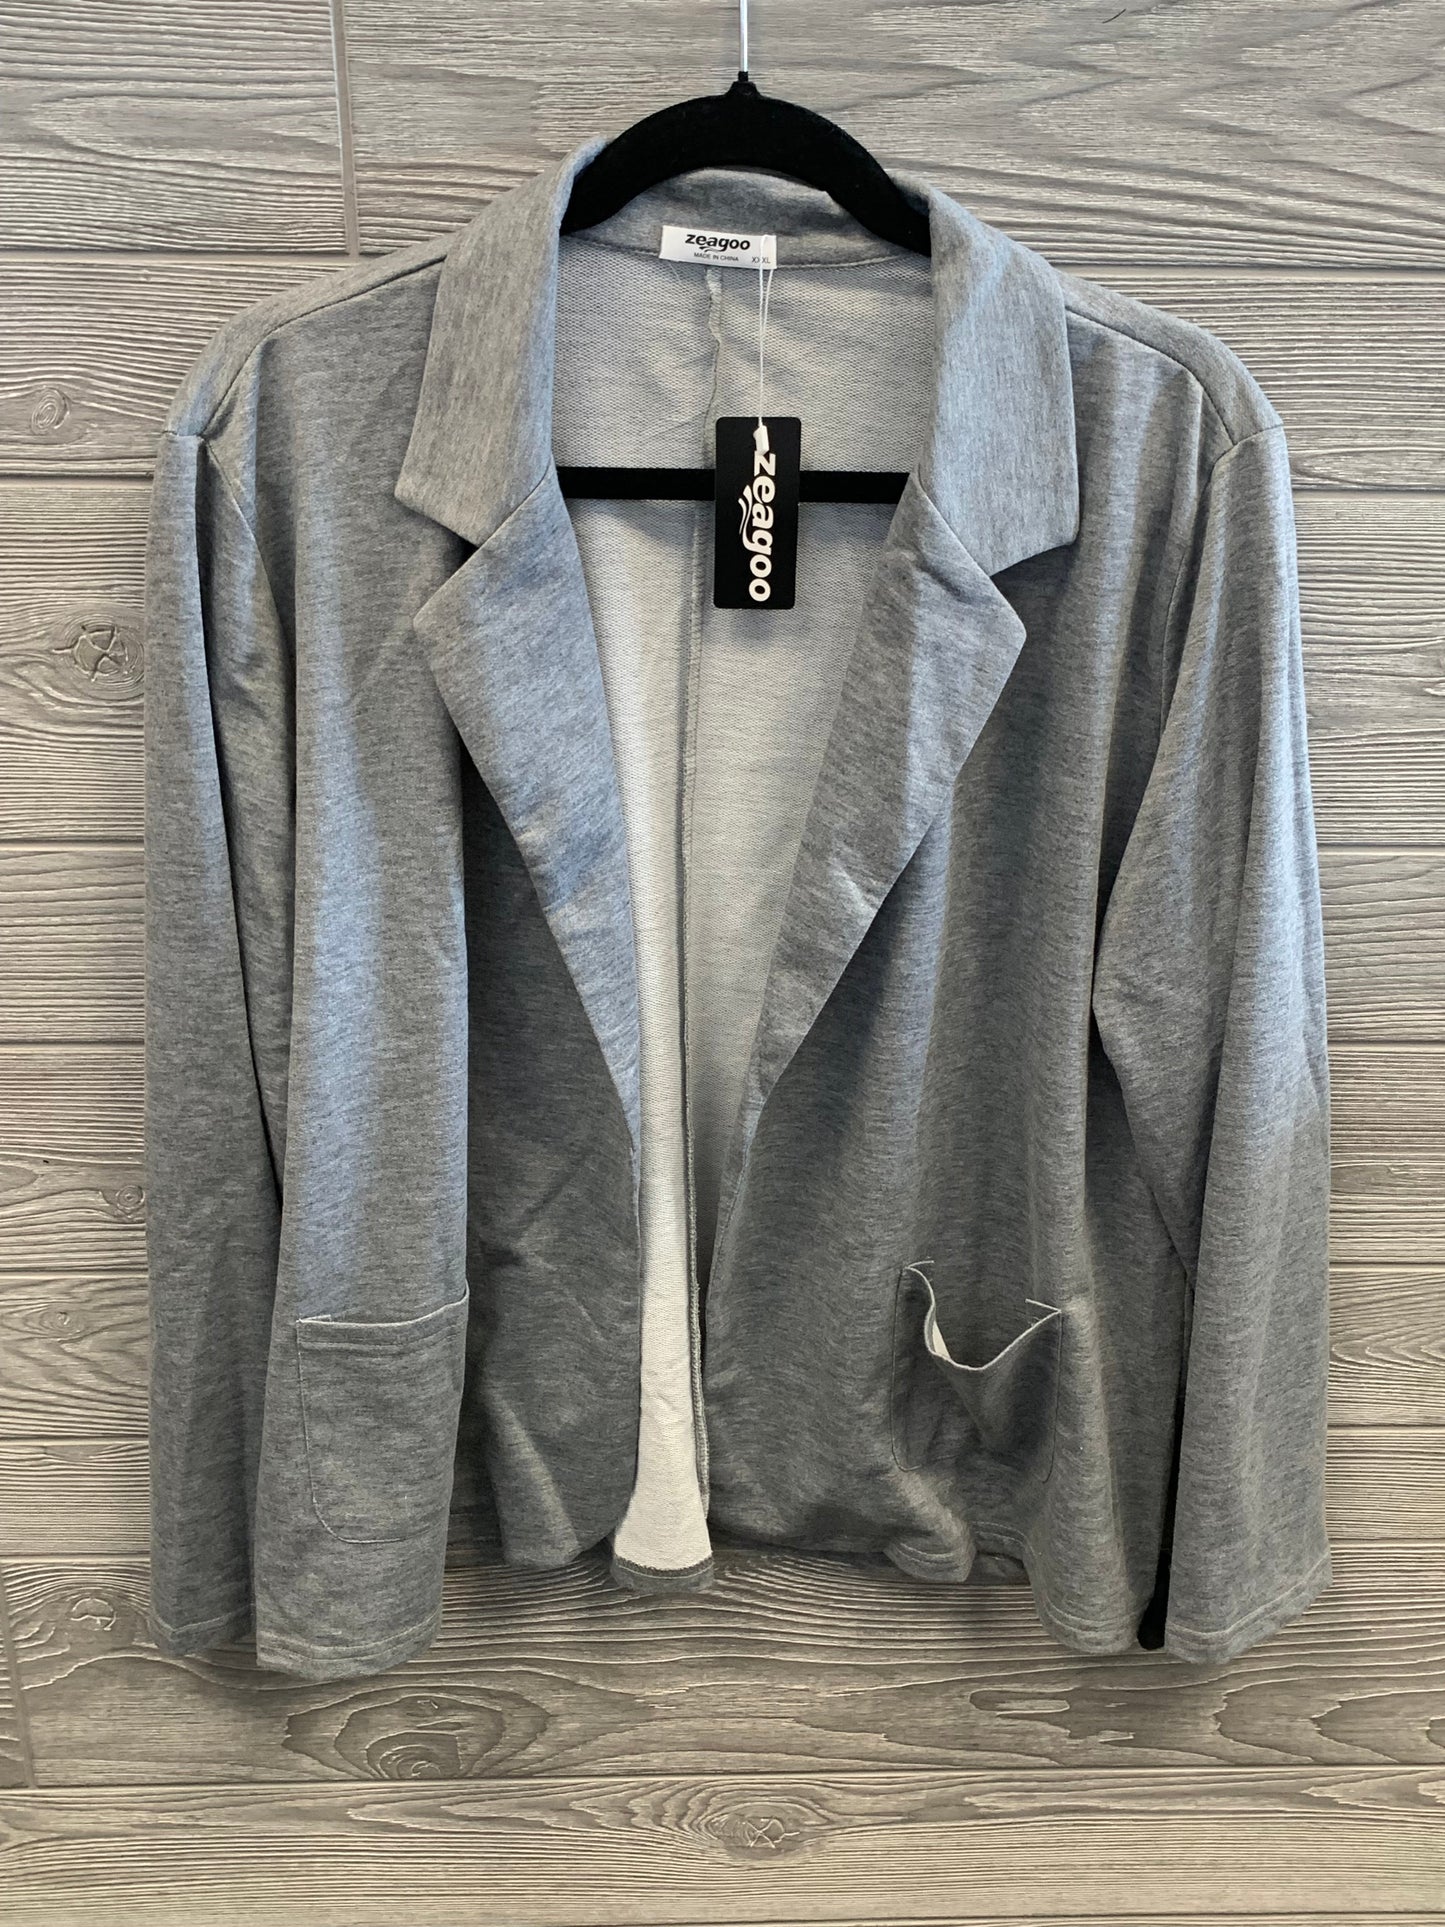 Grey Blazer Clothes Mentor, Size 3x